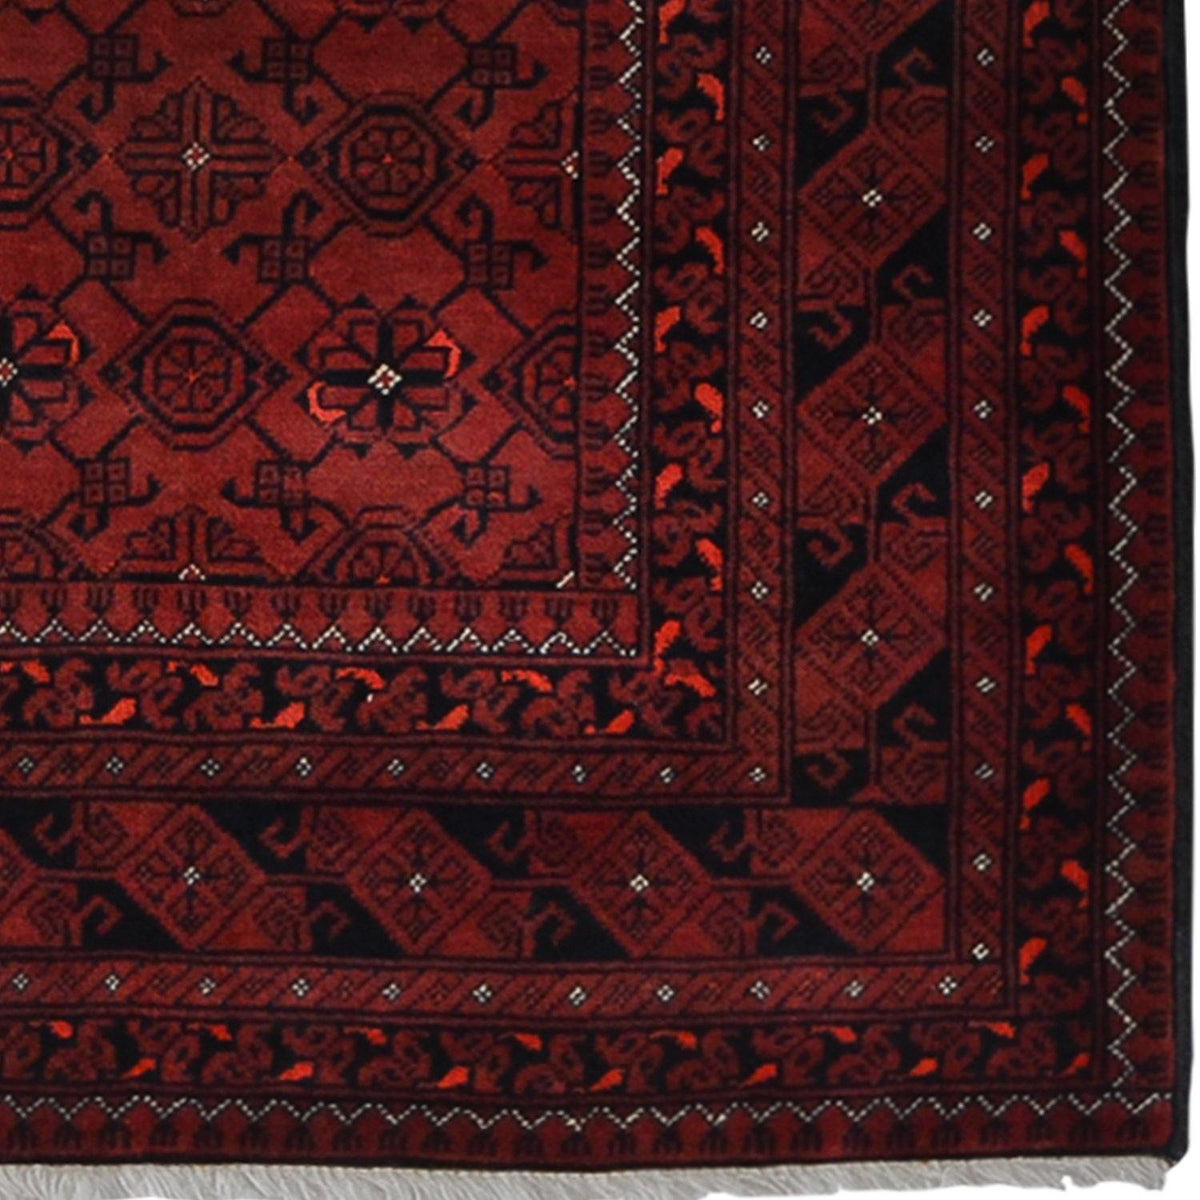 Fine Hand-knotted Turkmen Wool Runner 84cm x 287cm